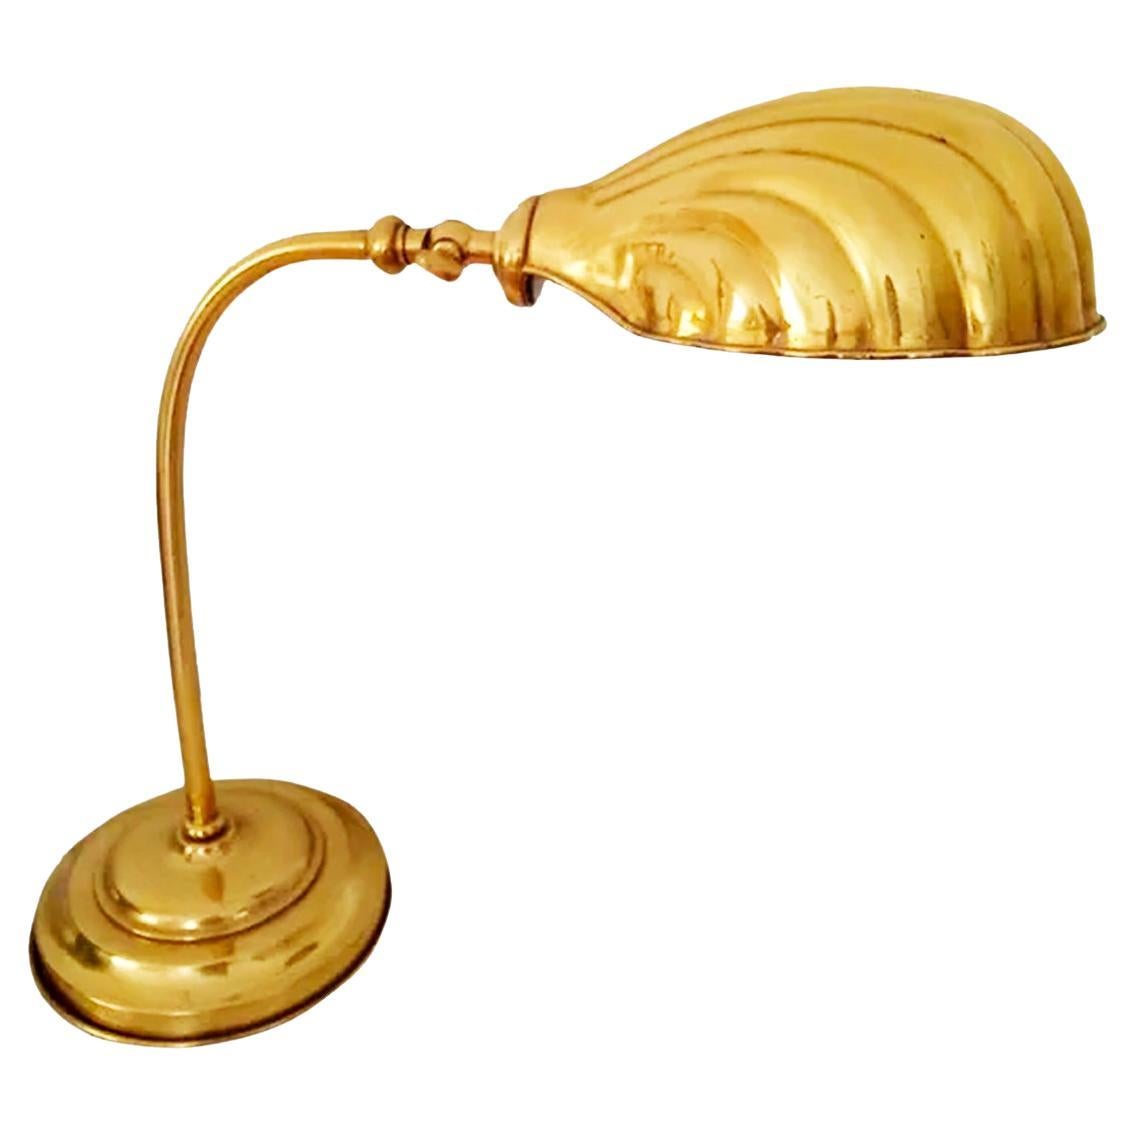   Desk or Table Lamp Shell Brass Gooseneck, Gold  Art Deco Style